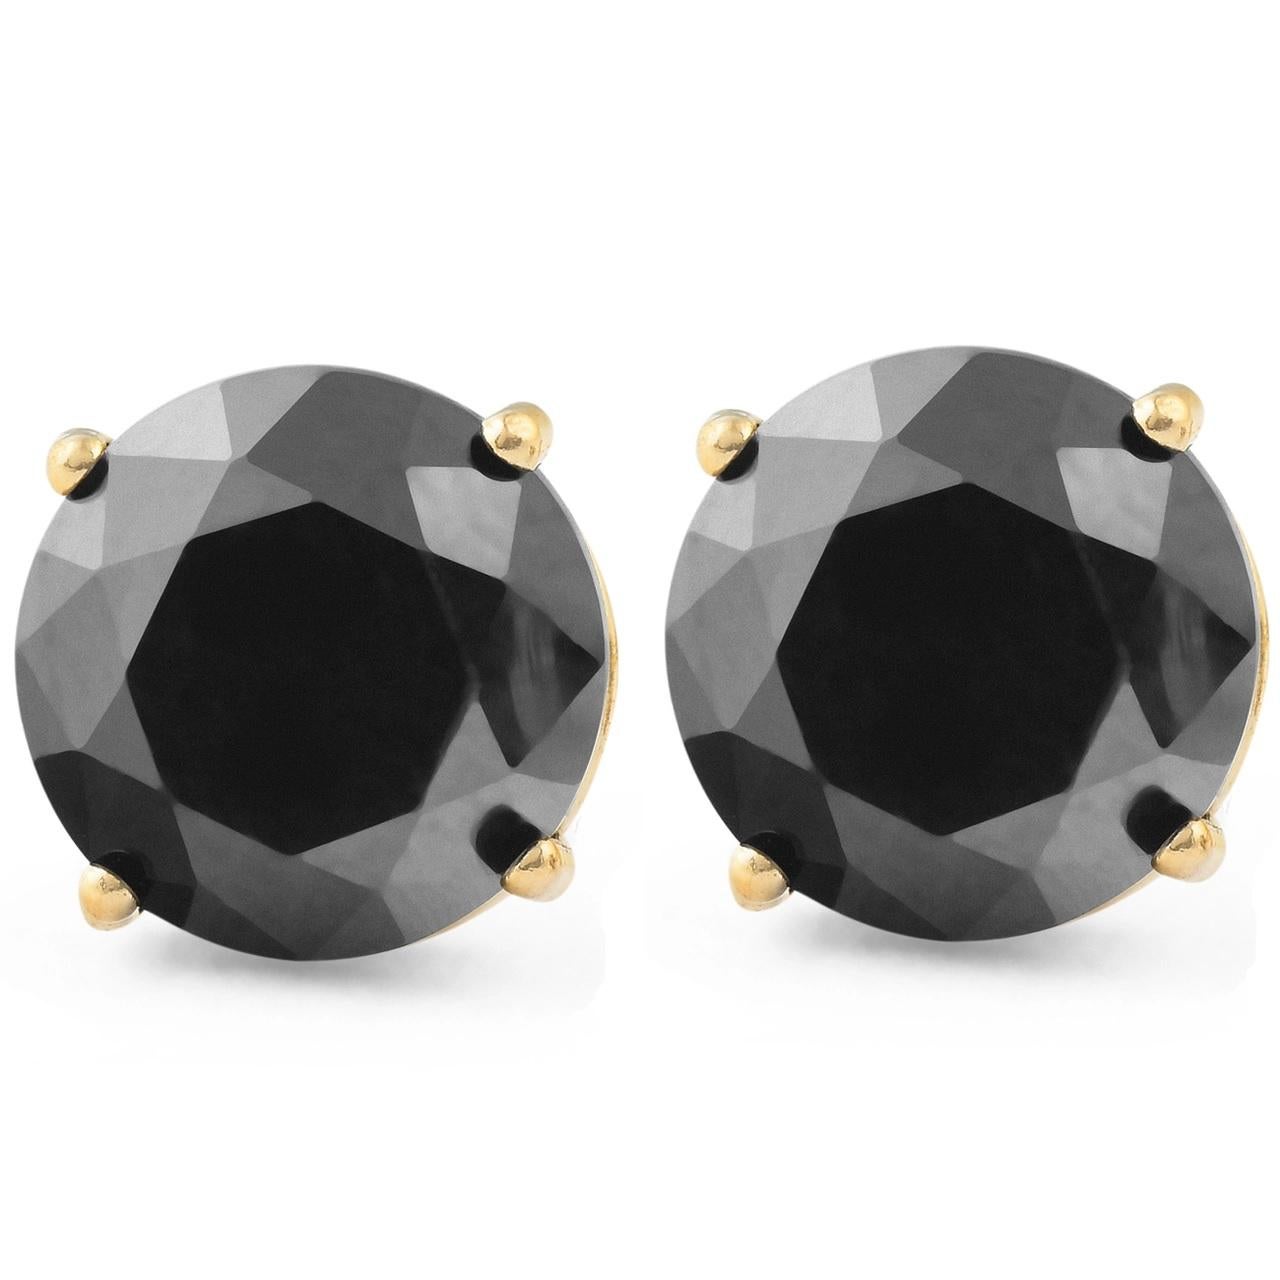 0.8 carat diamond stud earrings